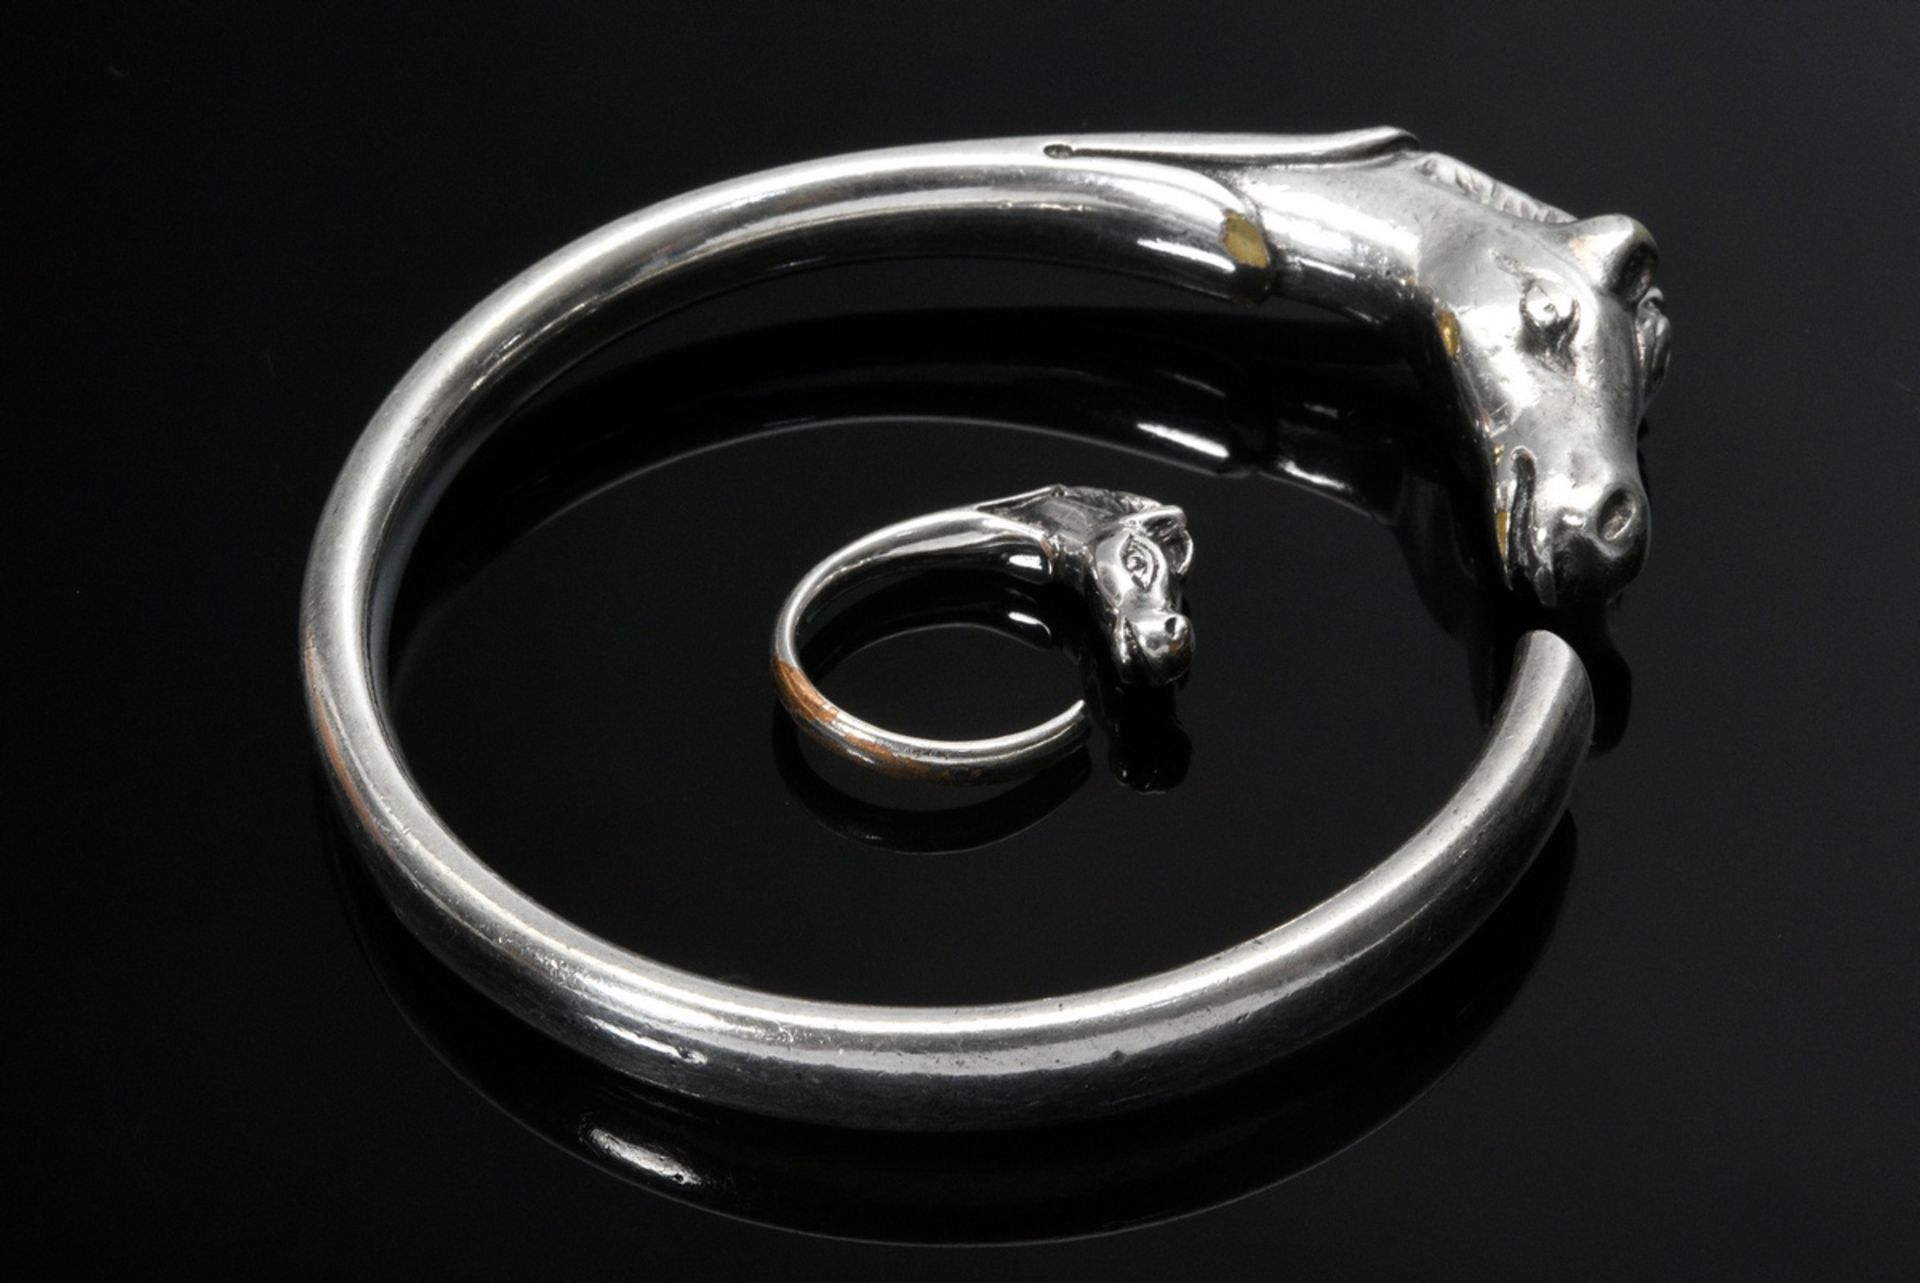 2 Diverse Teile Hermés "Galop" Schmuck, 1970er Jahre: Armspange (79,3g, Ø 6,3cm) und Ring (4,8g, Gr